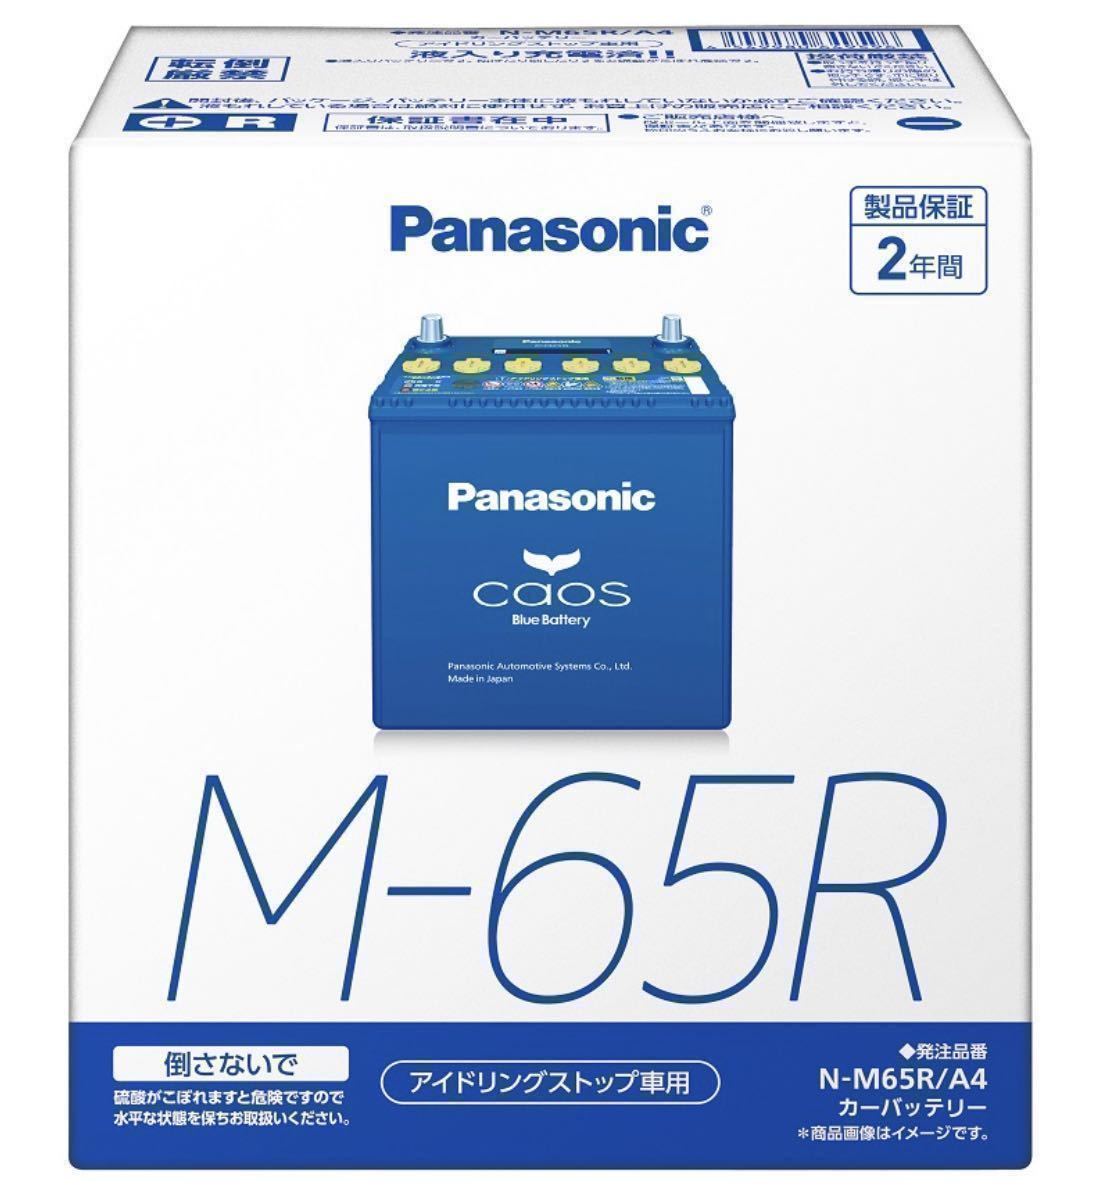 Panasonic Caos パナソニック カオス アイドリングストップ アイスト N-M65R/A4バッテリー 送料込 送料無料 最安値_画像1